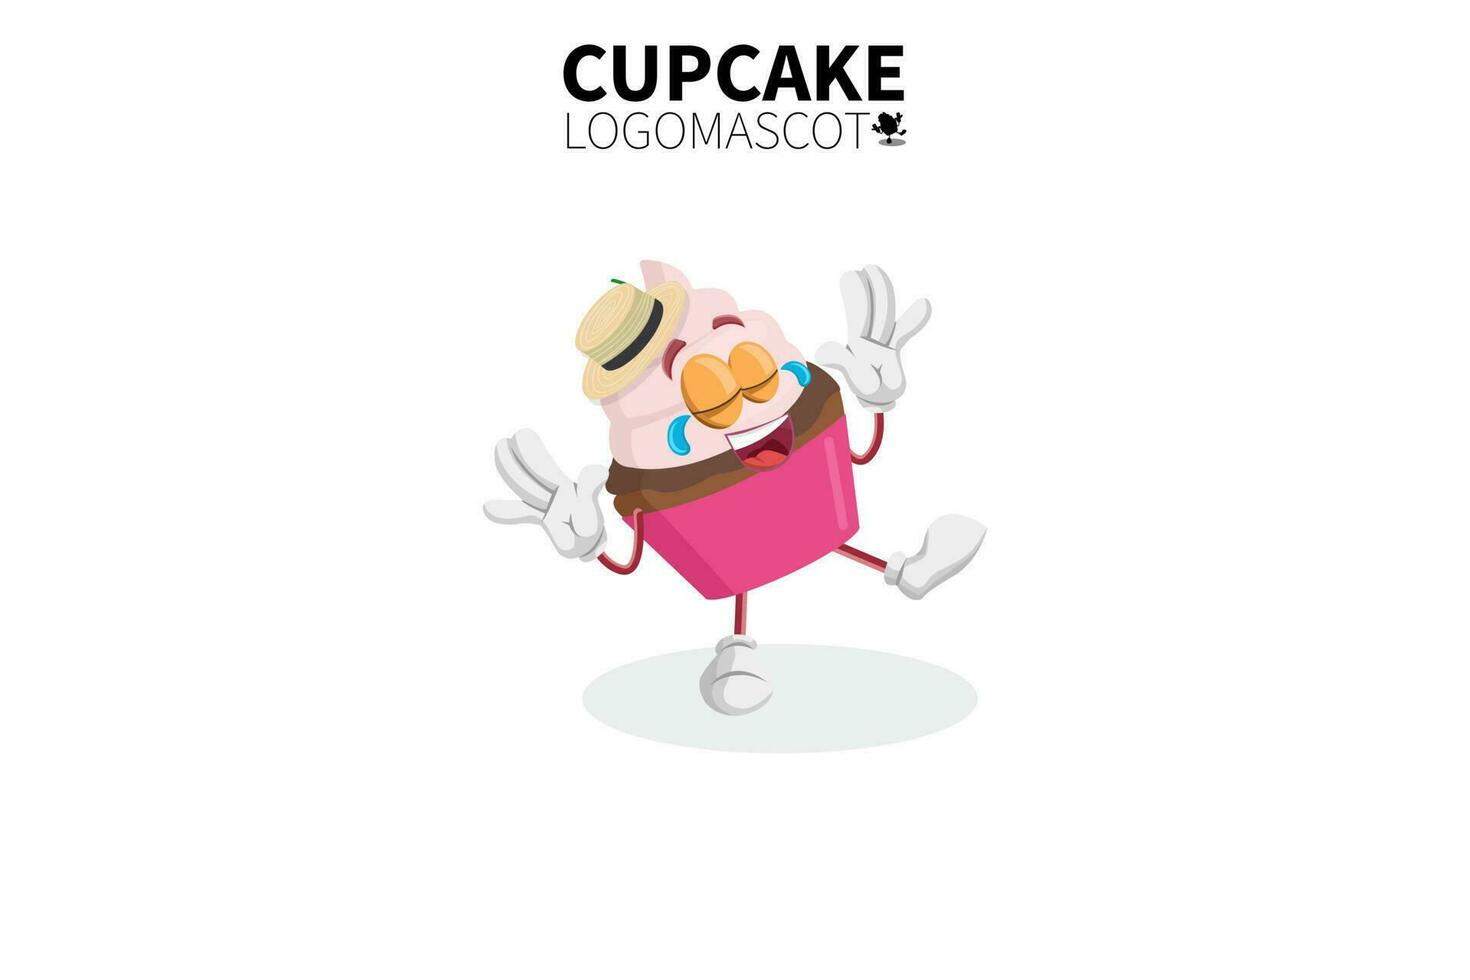 mascotte de cupcake de dessin animé, illustration vectorielle d'une mascotte de personnage de cupcake rose mignon vecteur